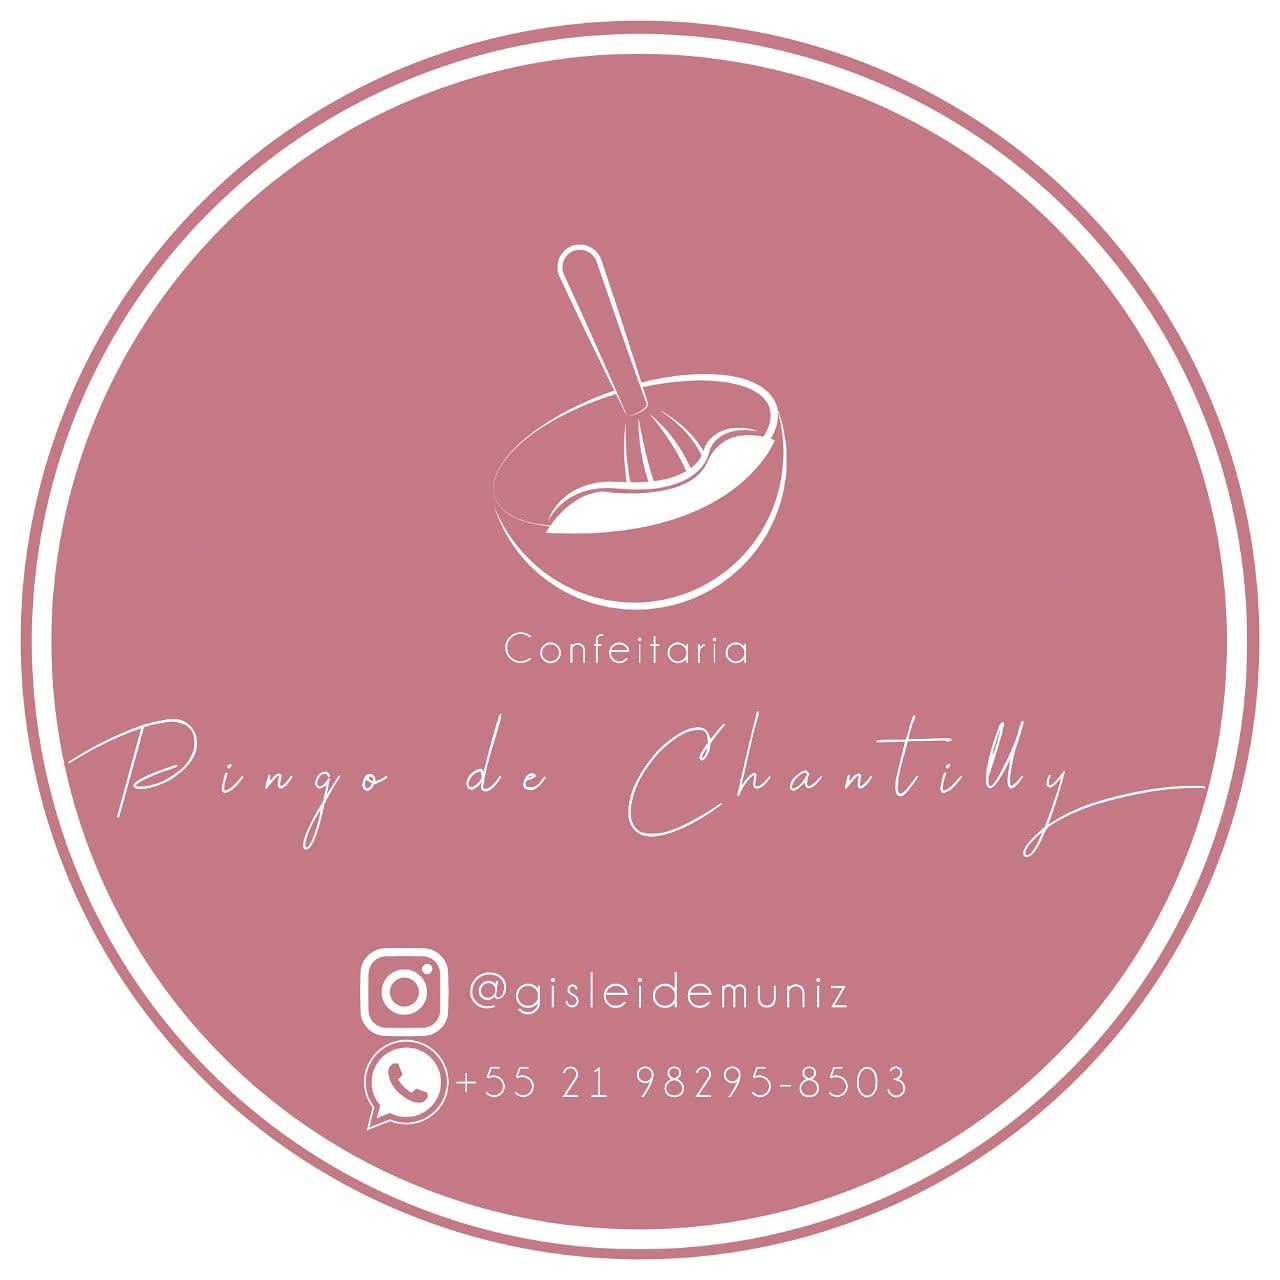 Confeitaria Pingo de Chantilly